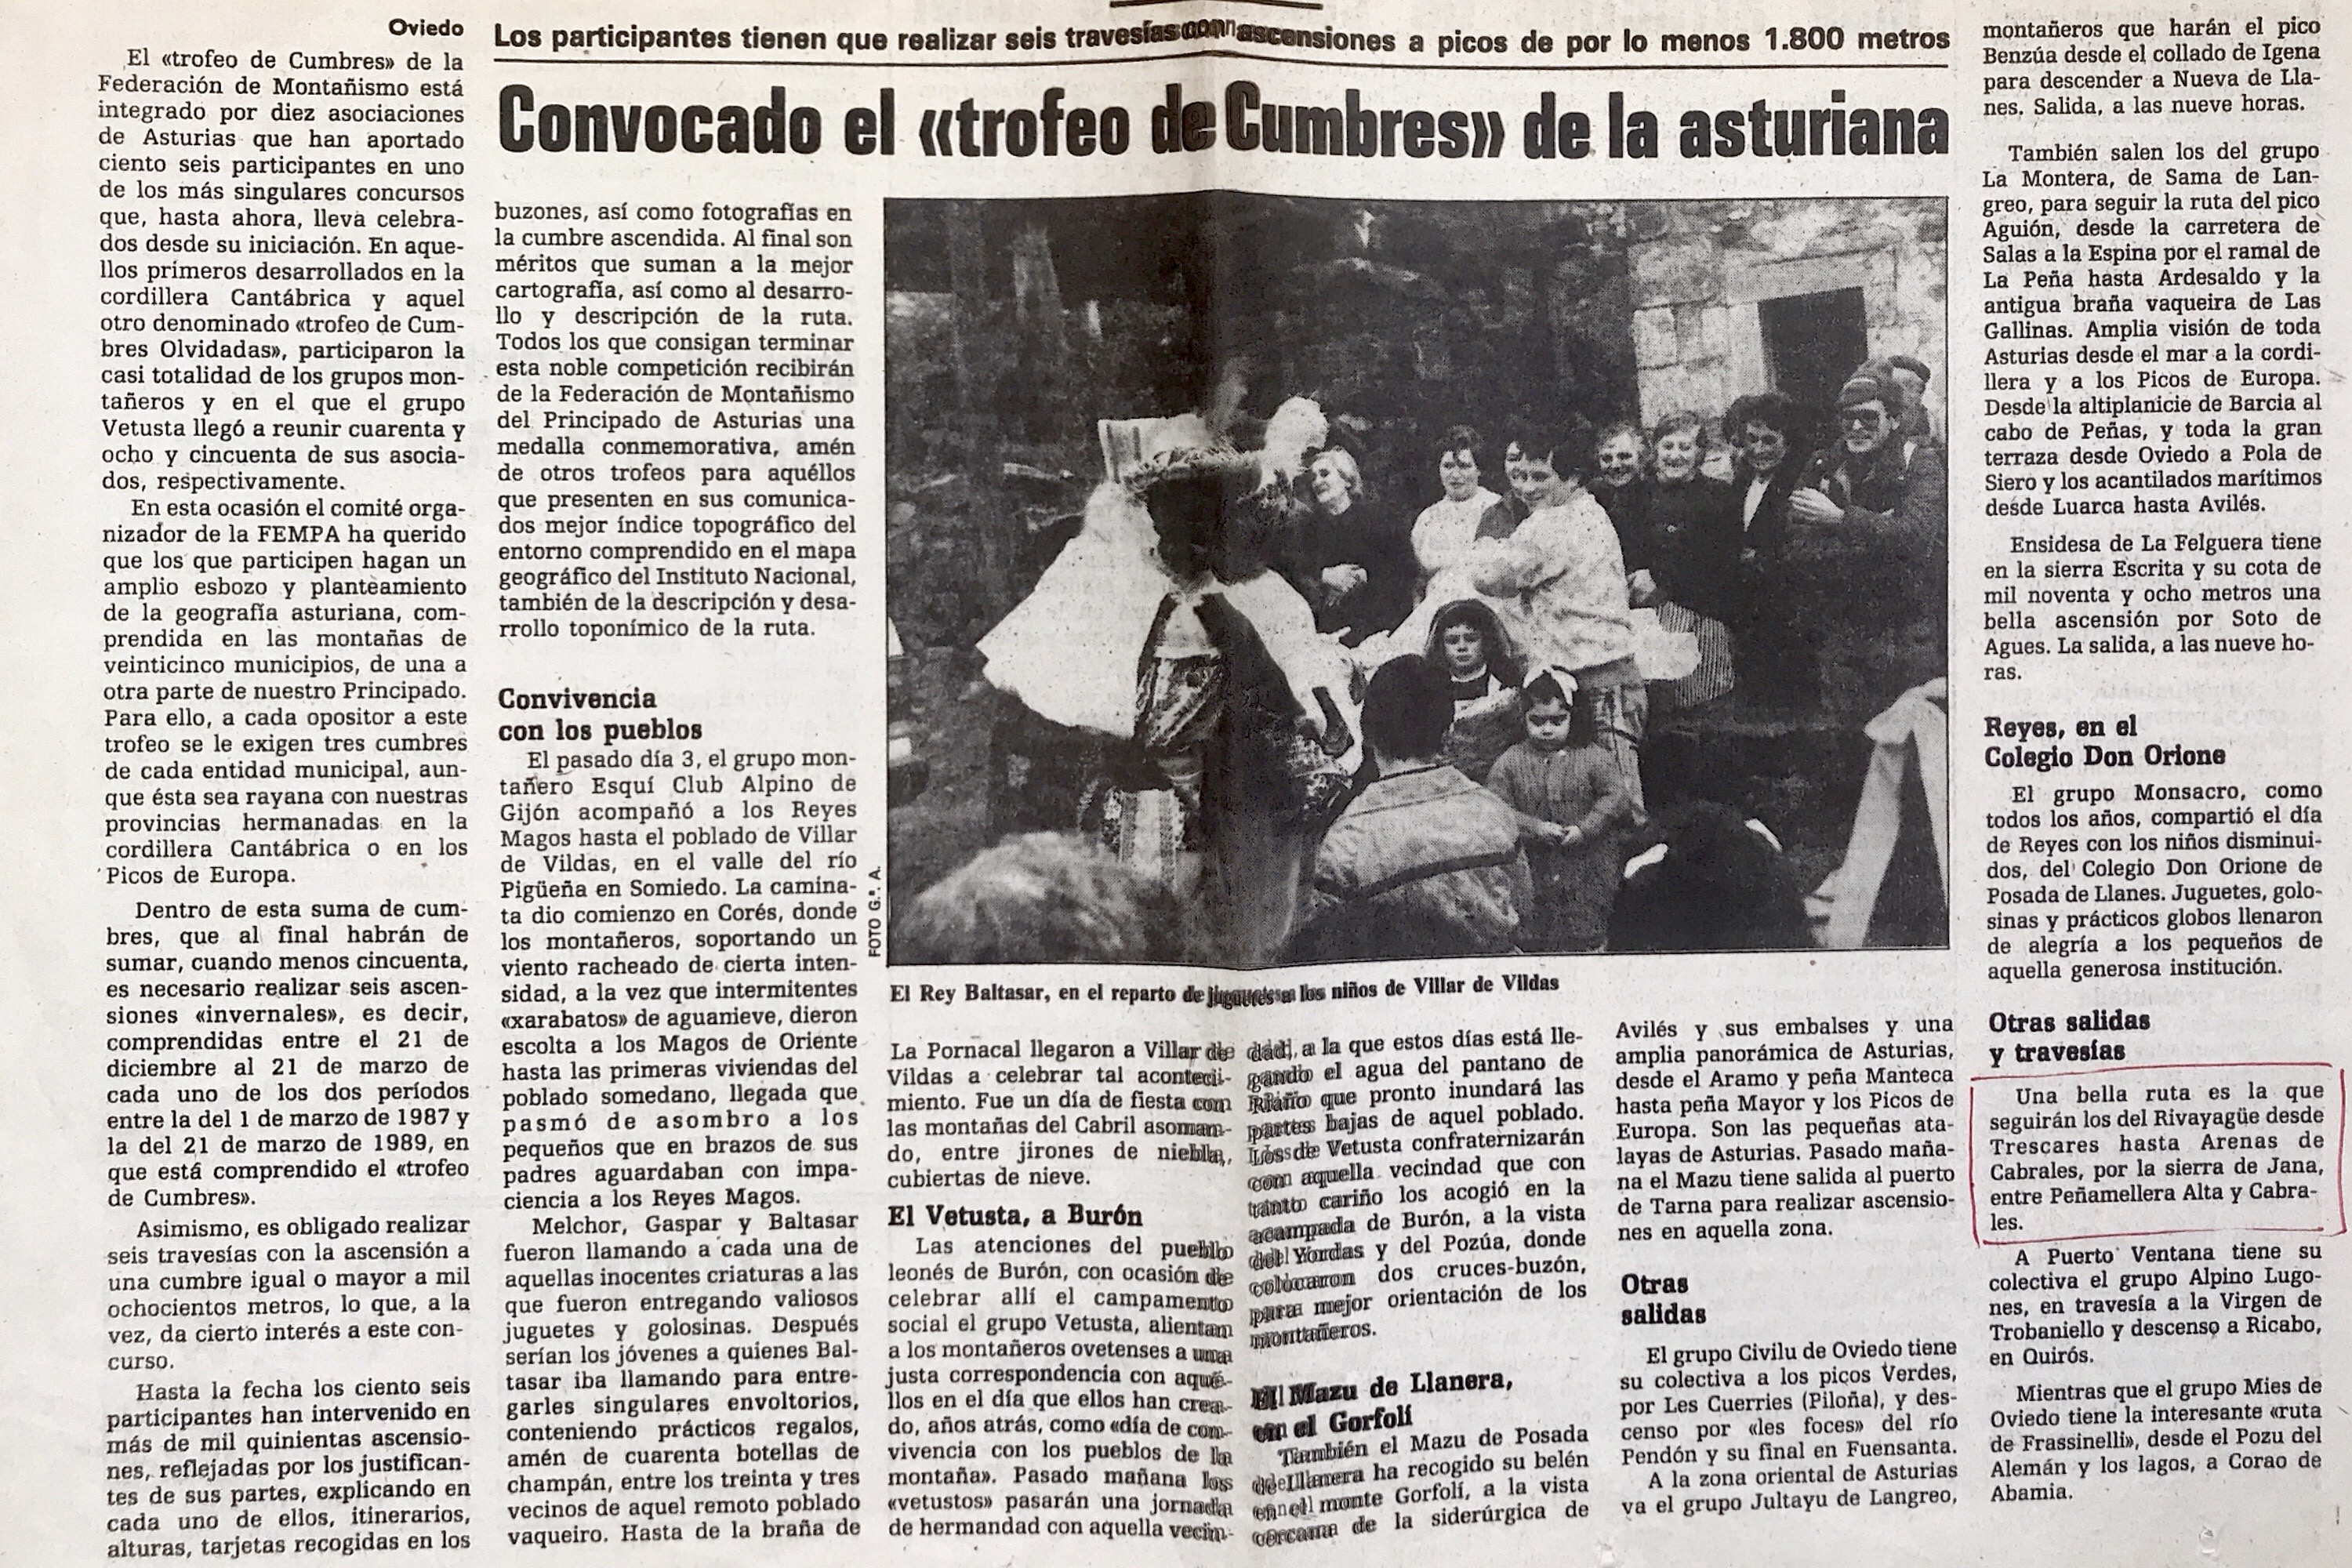 10 enero, 1988: Trescares - Sierra de Jana - Vega de Nava - Arenas de Cabrales